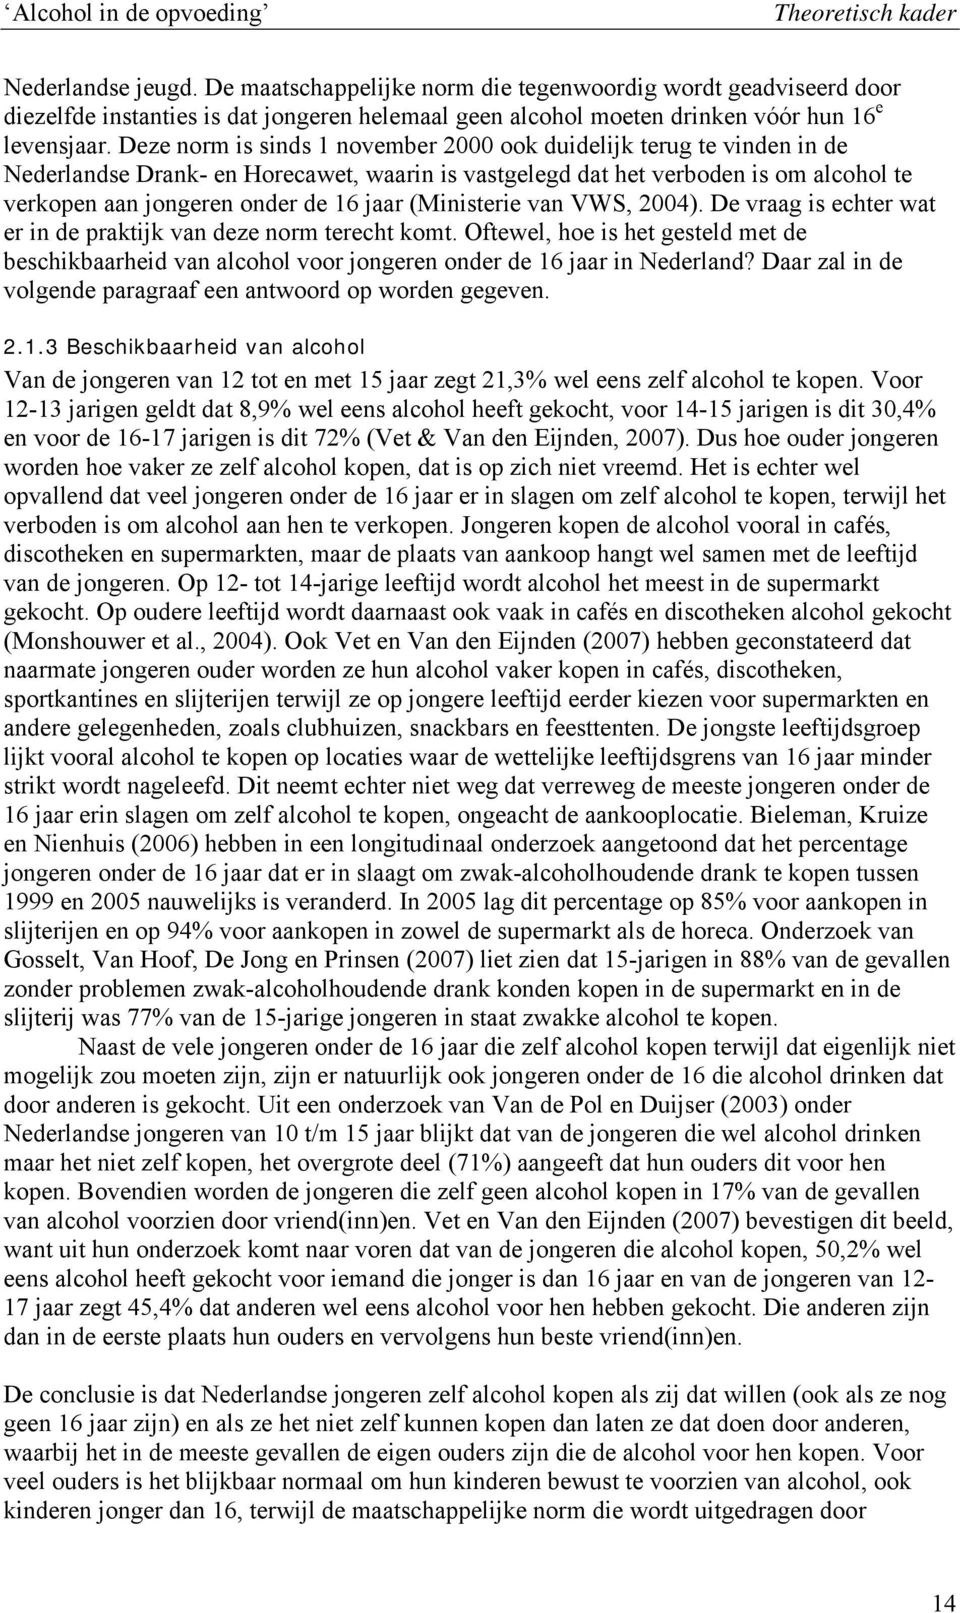 Deze norm is sinds 1 november 2000 ook duidelijk terug te vinden in de Nederlandse Drank- en Horecawet, waarin is vastgelegd dat het verboden is om alcohol te verkopen aan jongeren onder de 16 jaar